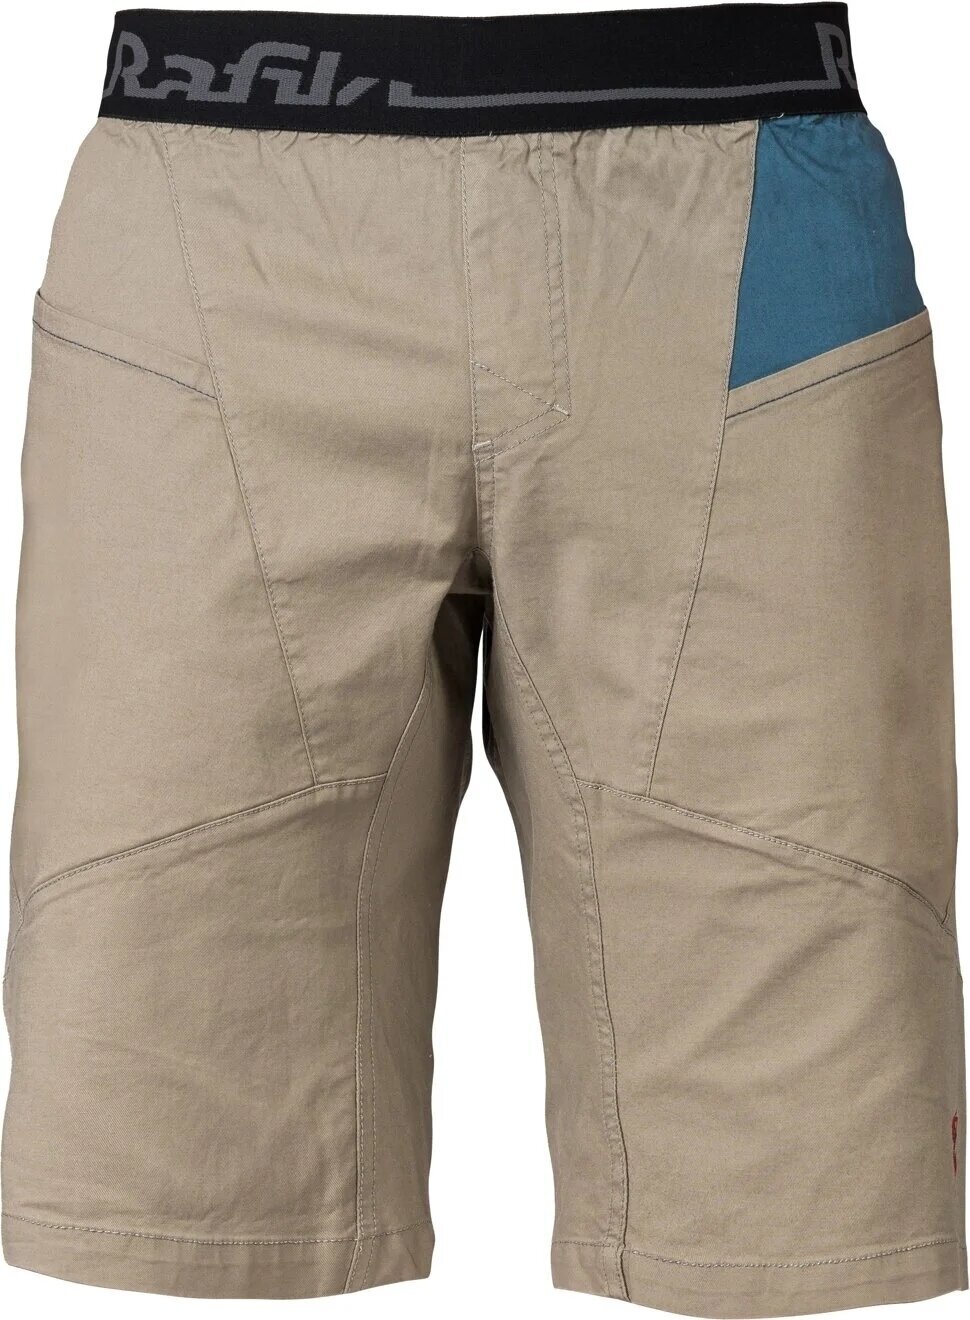 Kratke hlače na otvorenom Rafiki Megos Man Shorts Brindle/Stargazer M Kratke hlače na otvorenom